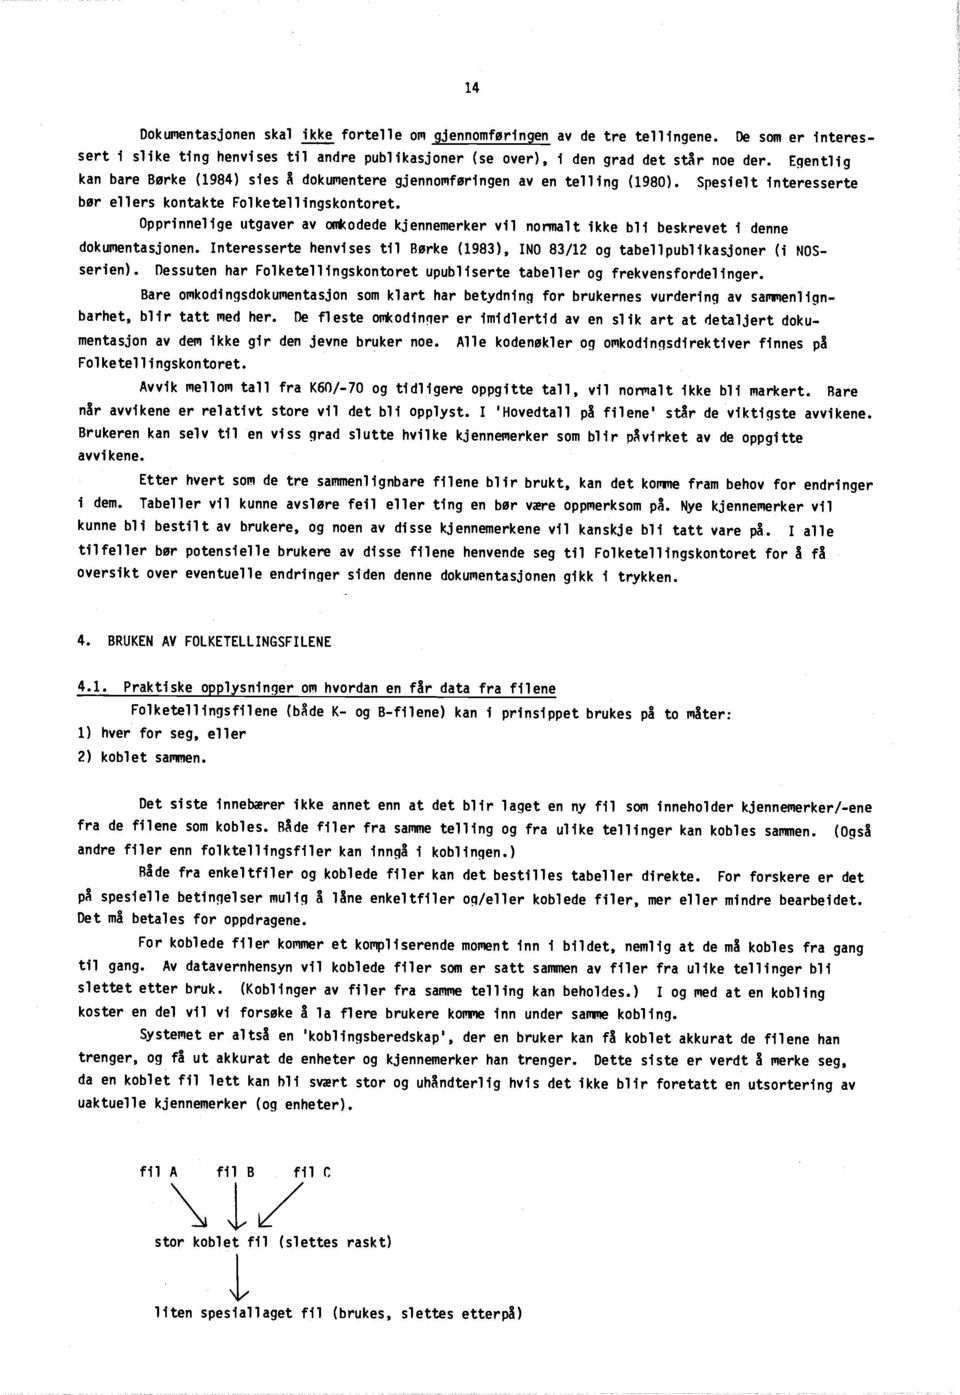 Opprinnelige utgaver av omkodede kjennemerker vil normalt ikke bli beskrevet i denn e dokumentasjonen. Interesserte henvises til Børke (1983), INO 83/12 og tabellpublikasjoner (i NOS - serien).